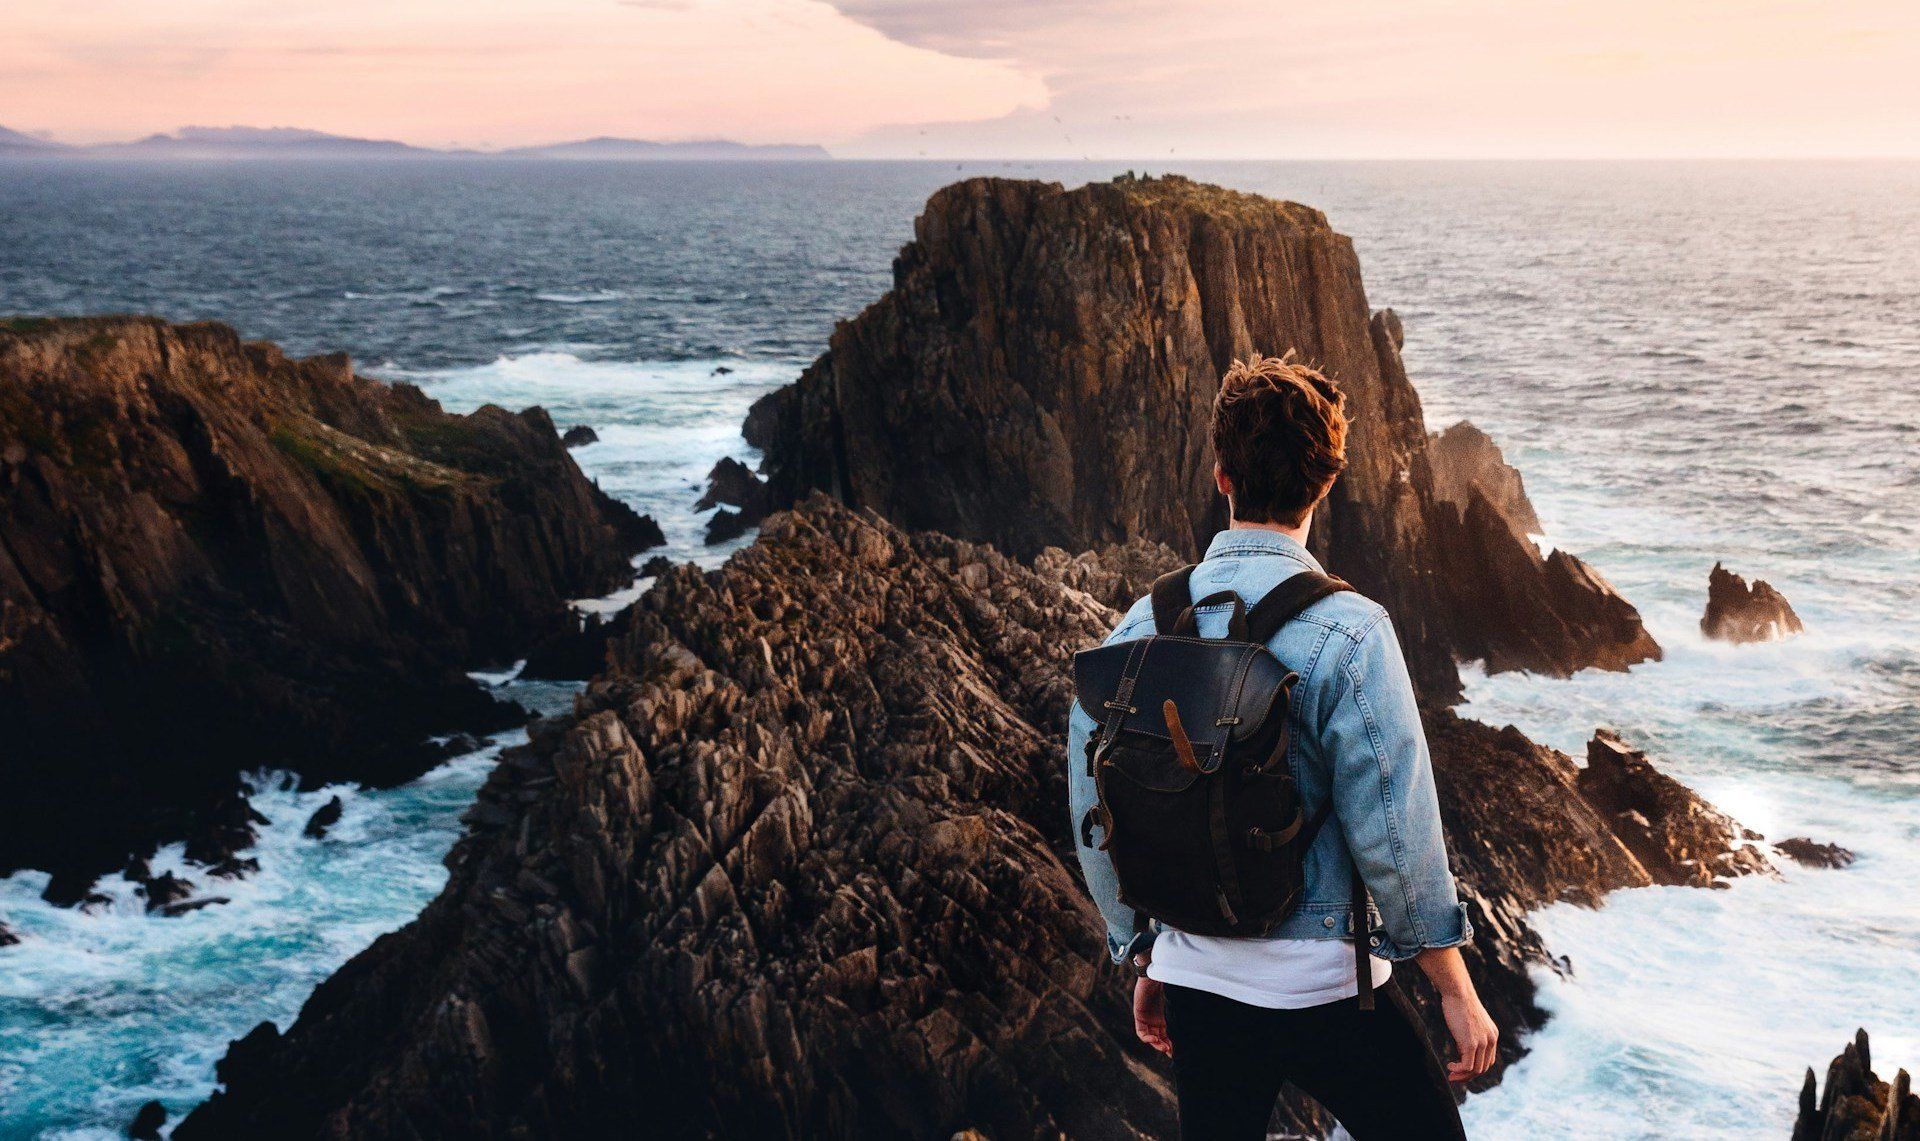 Malin-félsziget, az Ír-sziget legészakibb pontja, férfi áll a sziklák és a tenger előtt